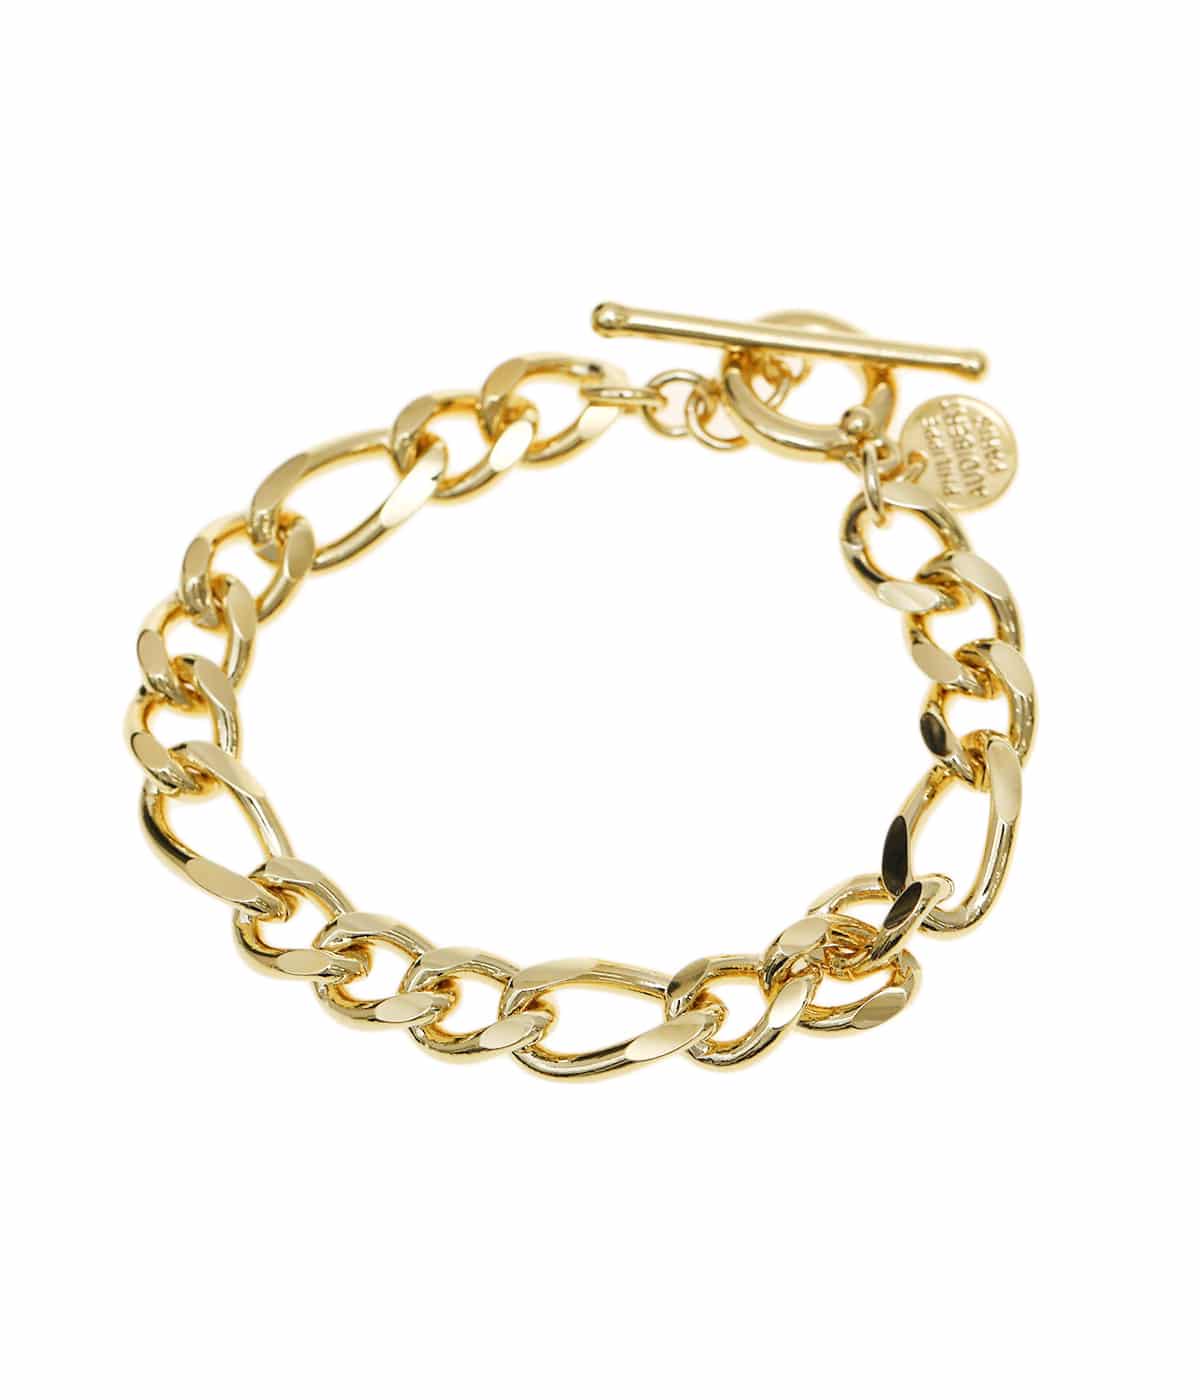 【レディース】Doug chain bracelet | PHILIPPE AUDIBERT(フィリップオーディベール) / アクセサリー